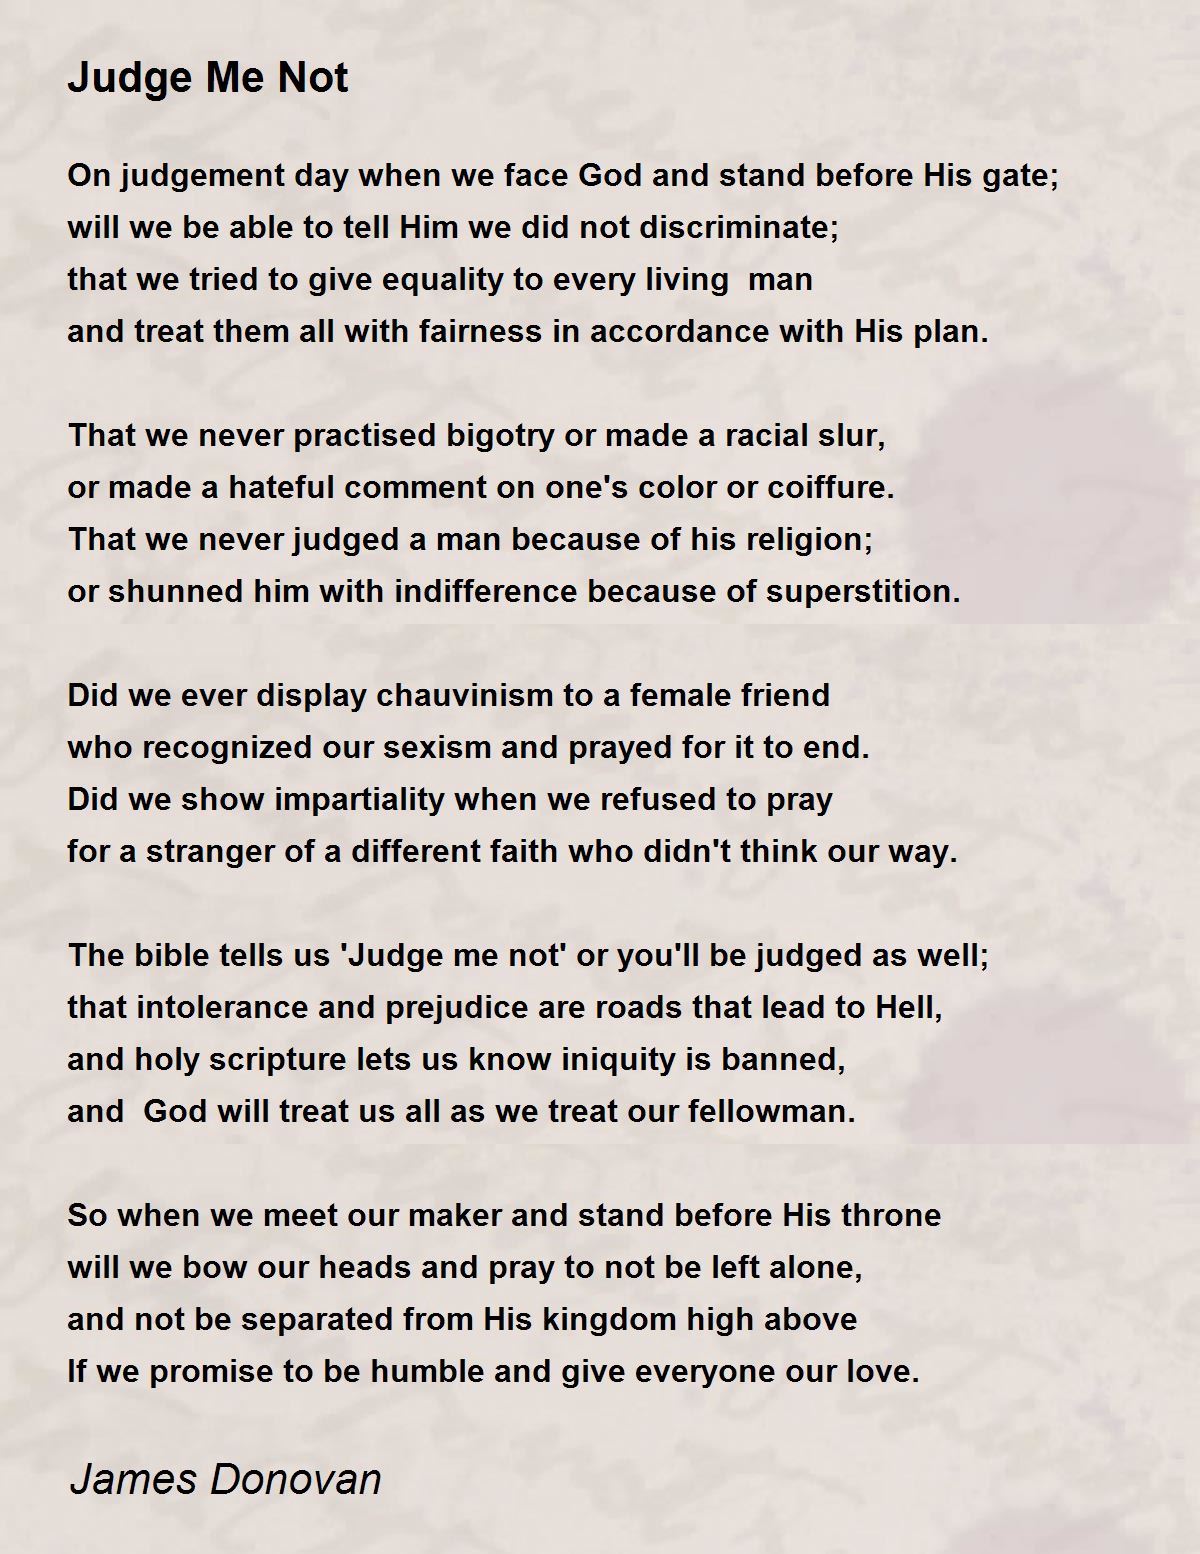  Judge Me Not Poem  by James Donovan Poem  Hunter